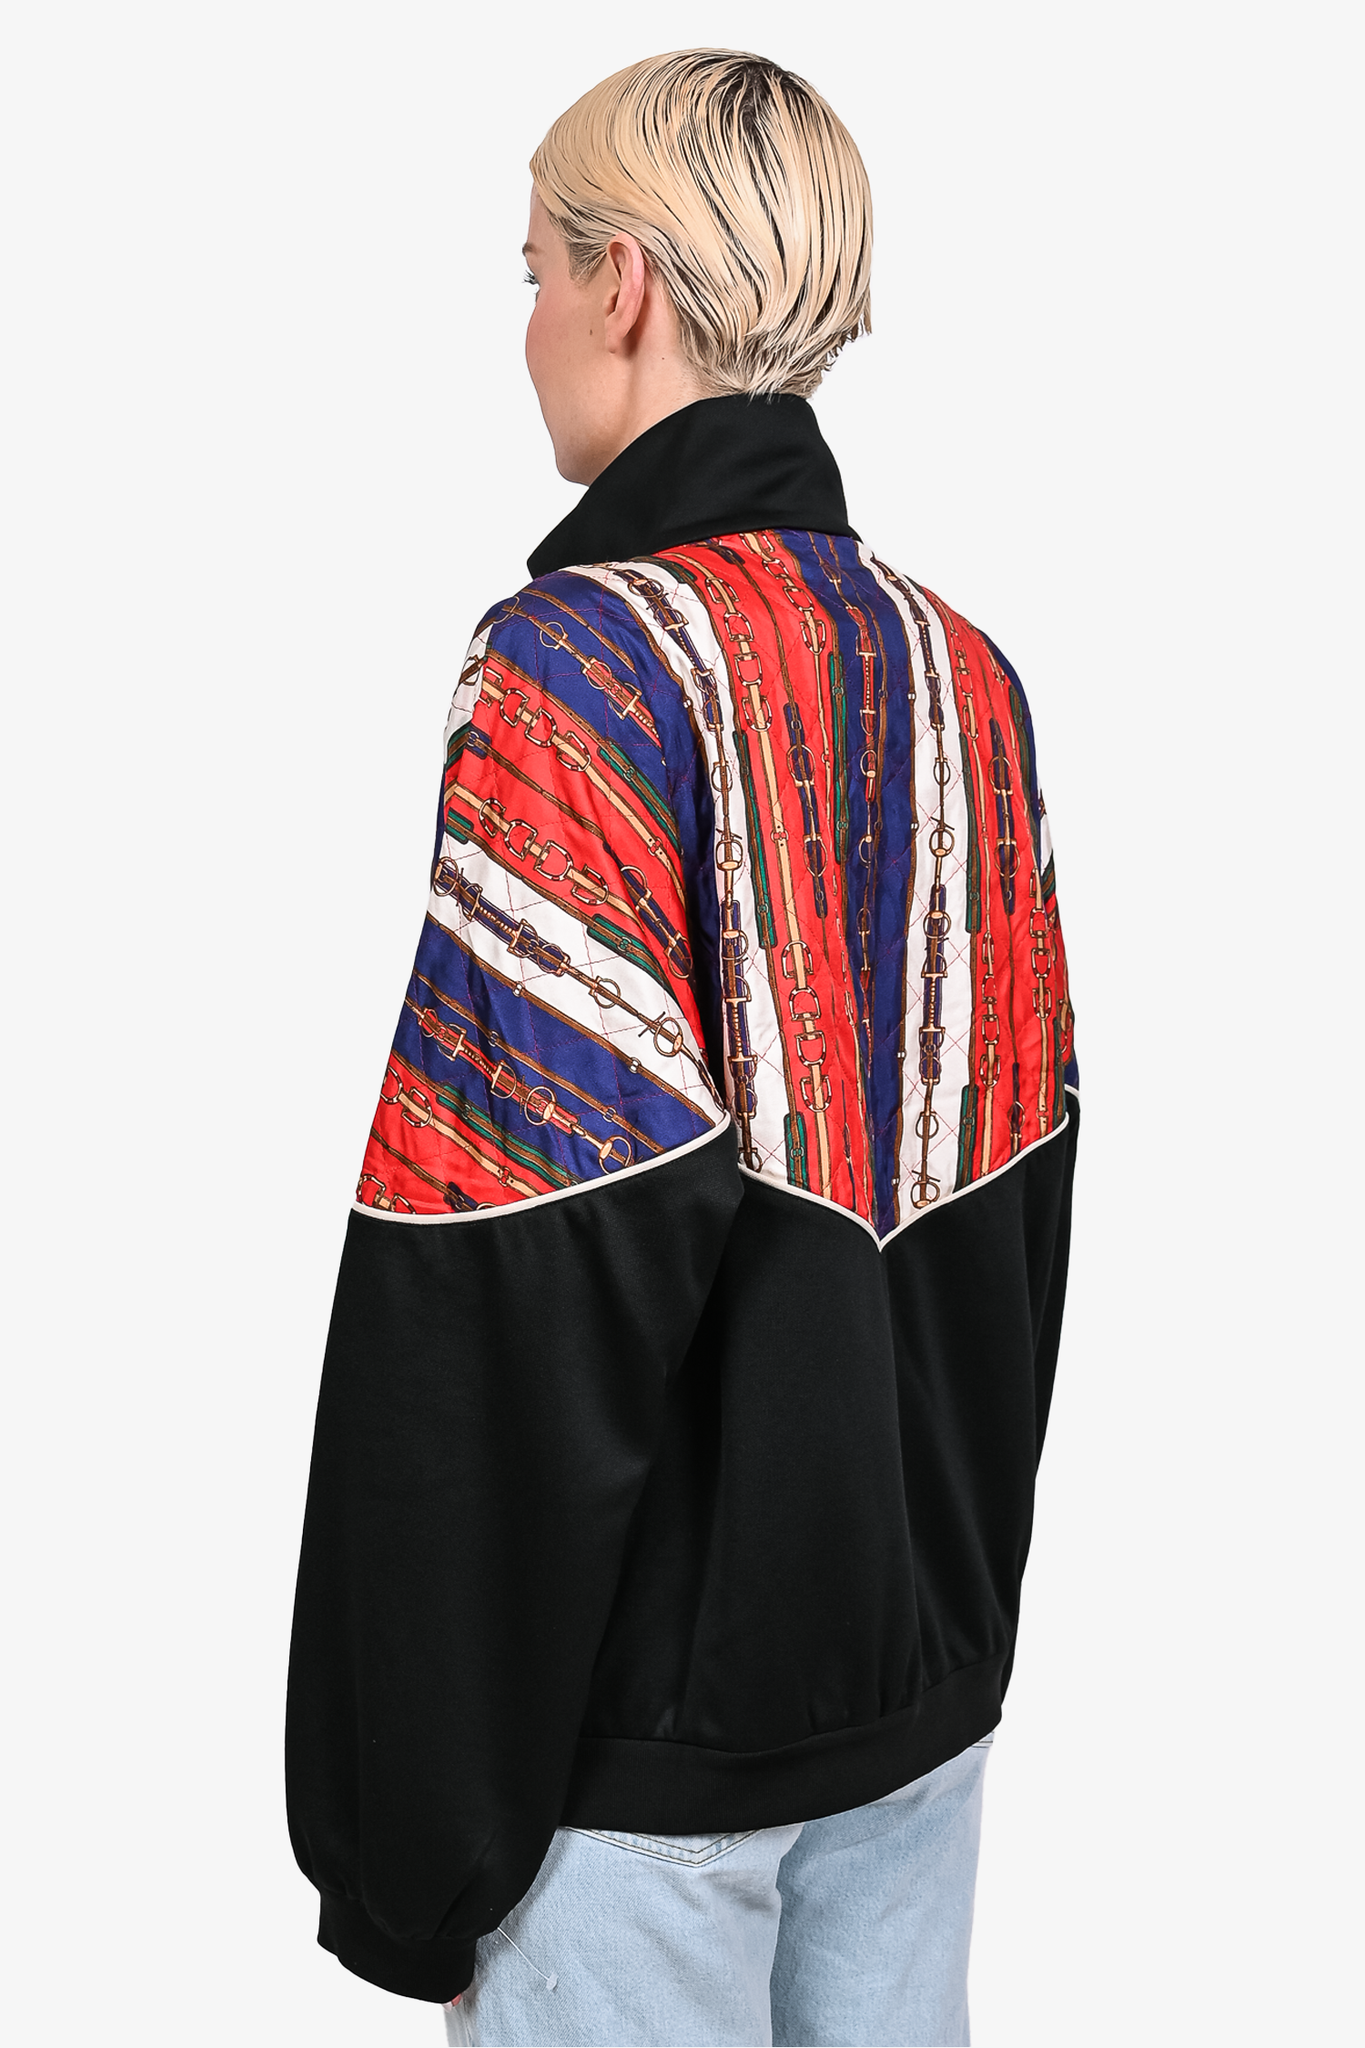 Gucci Red/Black/Multi Chain Print Zip Up Jacket sz XL w/ Tags